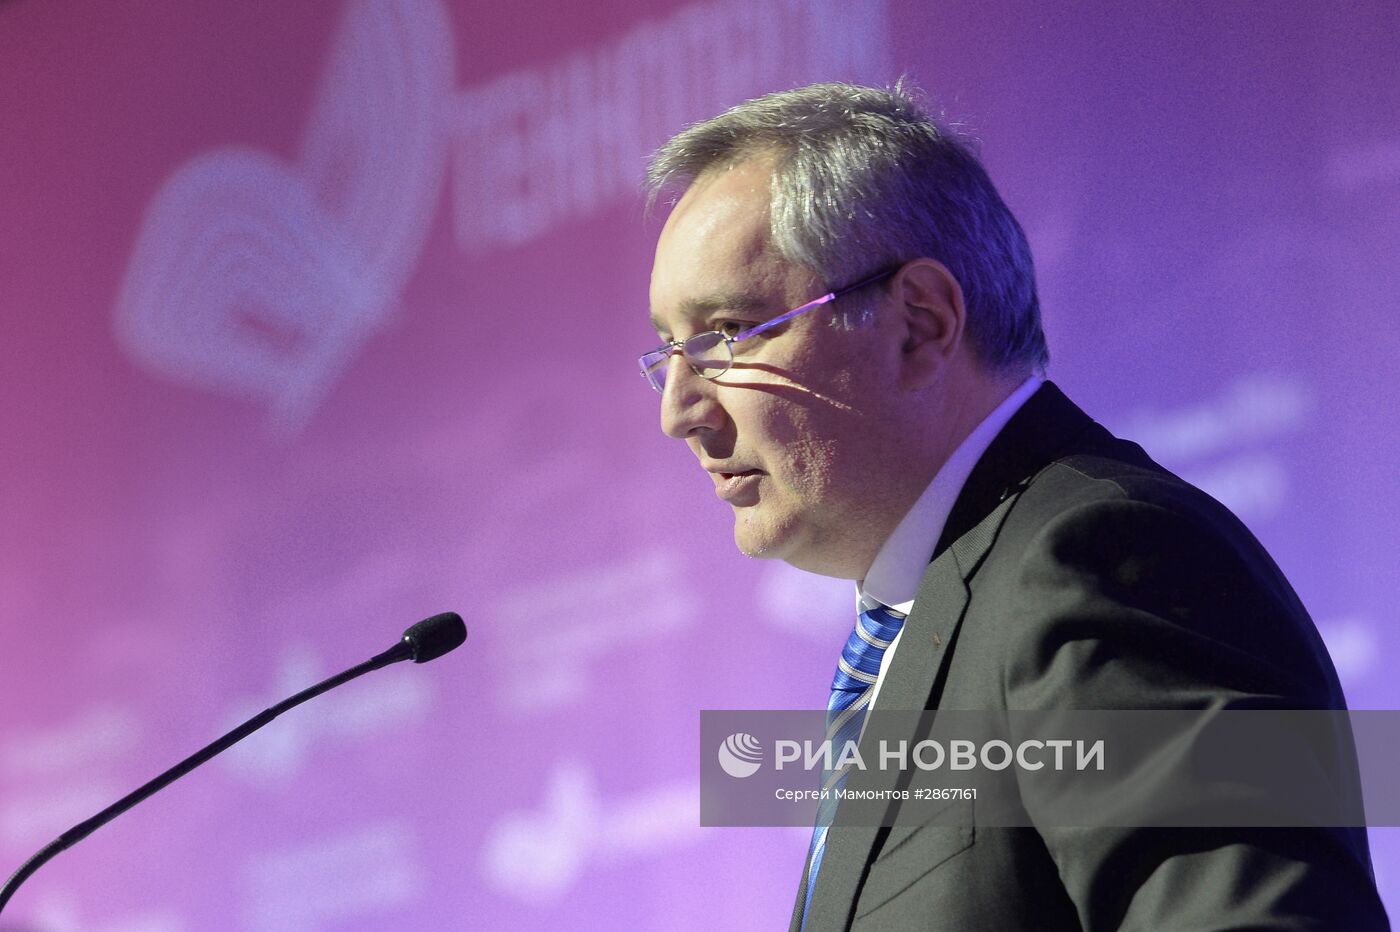 Вице-премьер РФ Д. Рогозин посетил международный форум "Технопром-2016" в Новосибирске